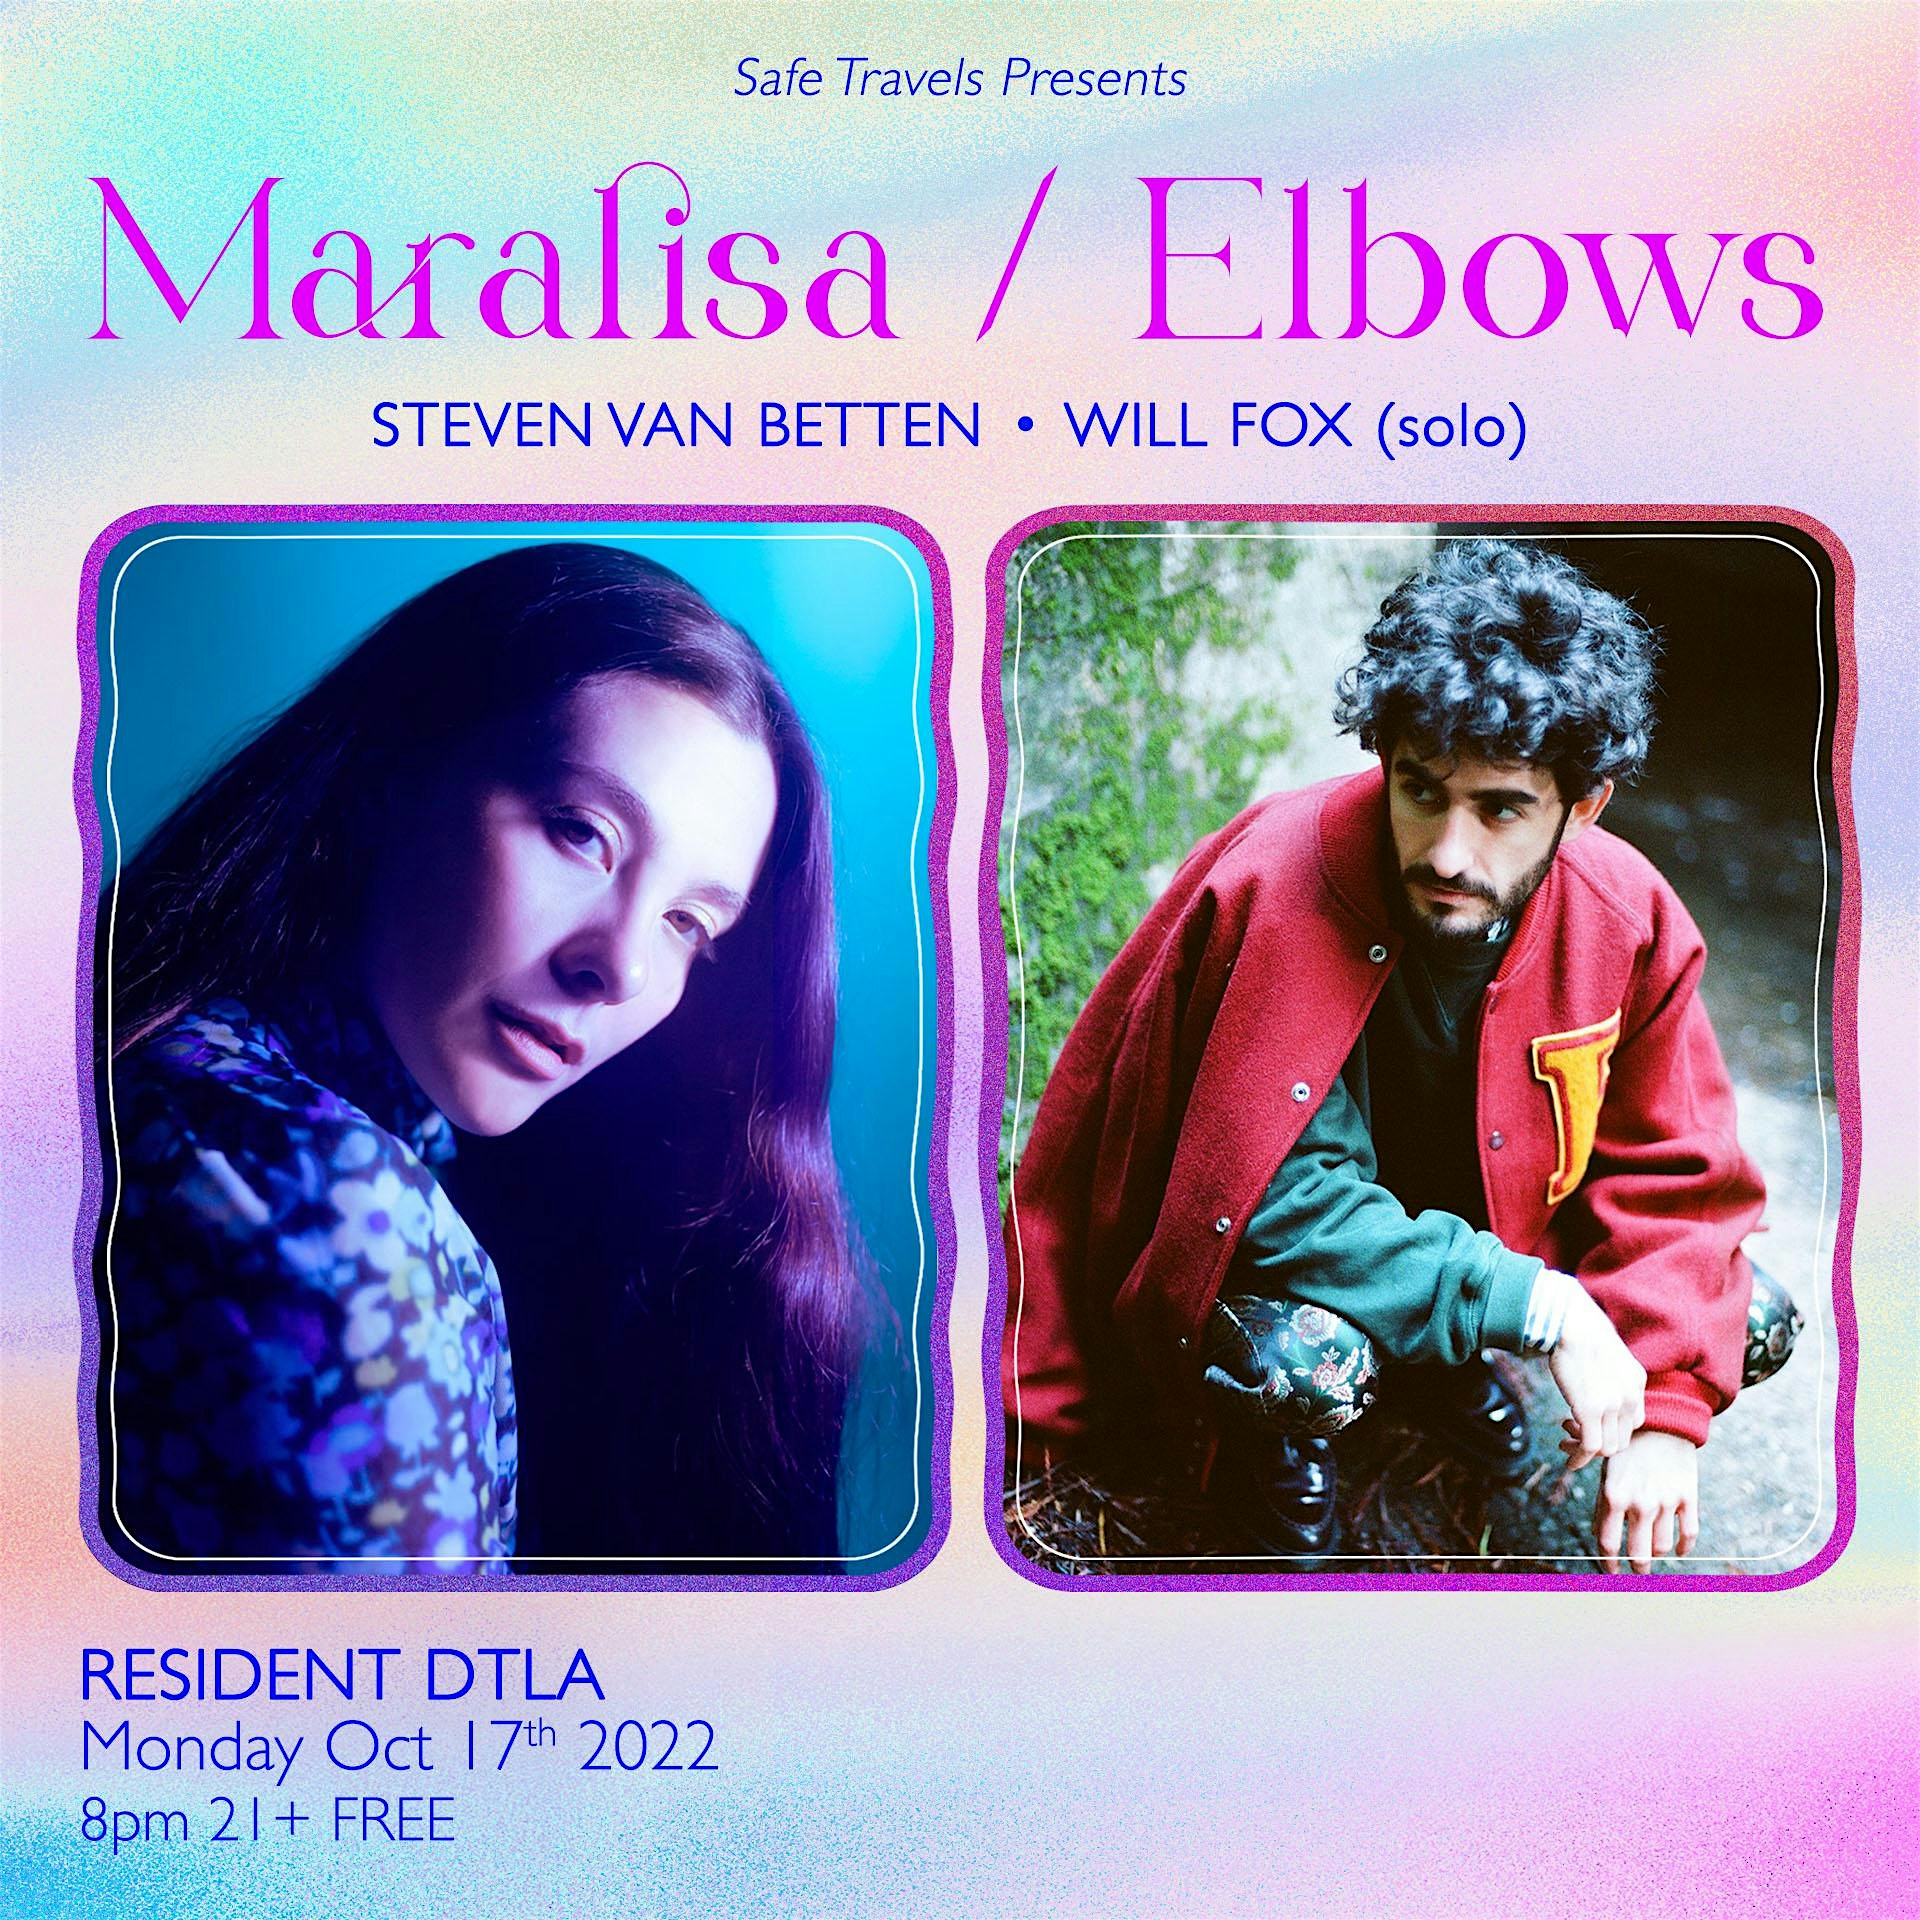 Elbows / Maralisa with Steven van Betten & Will Fox